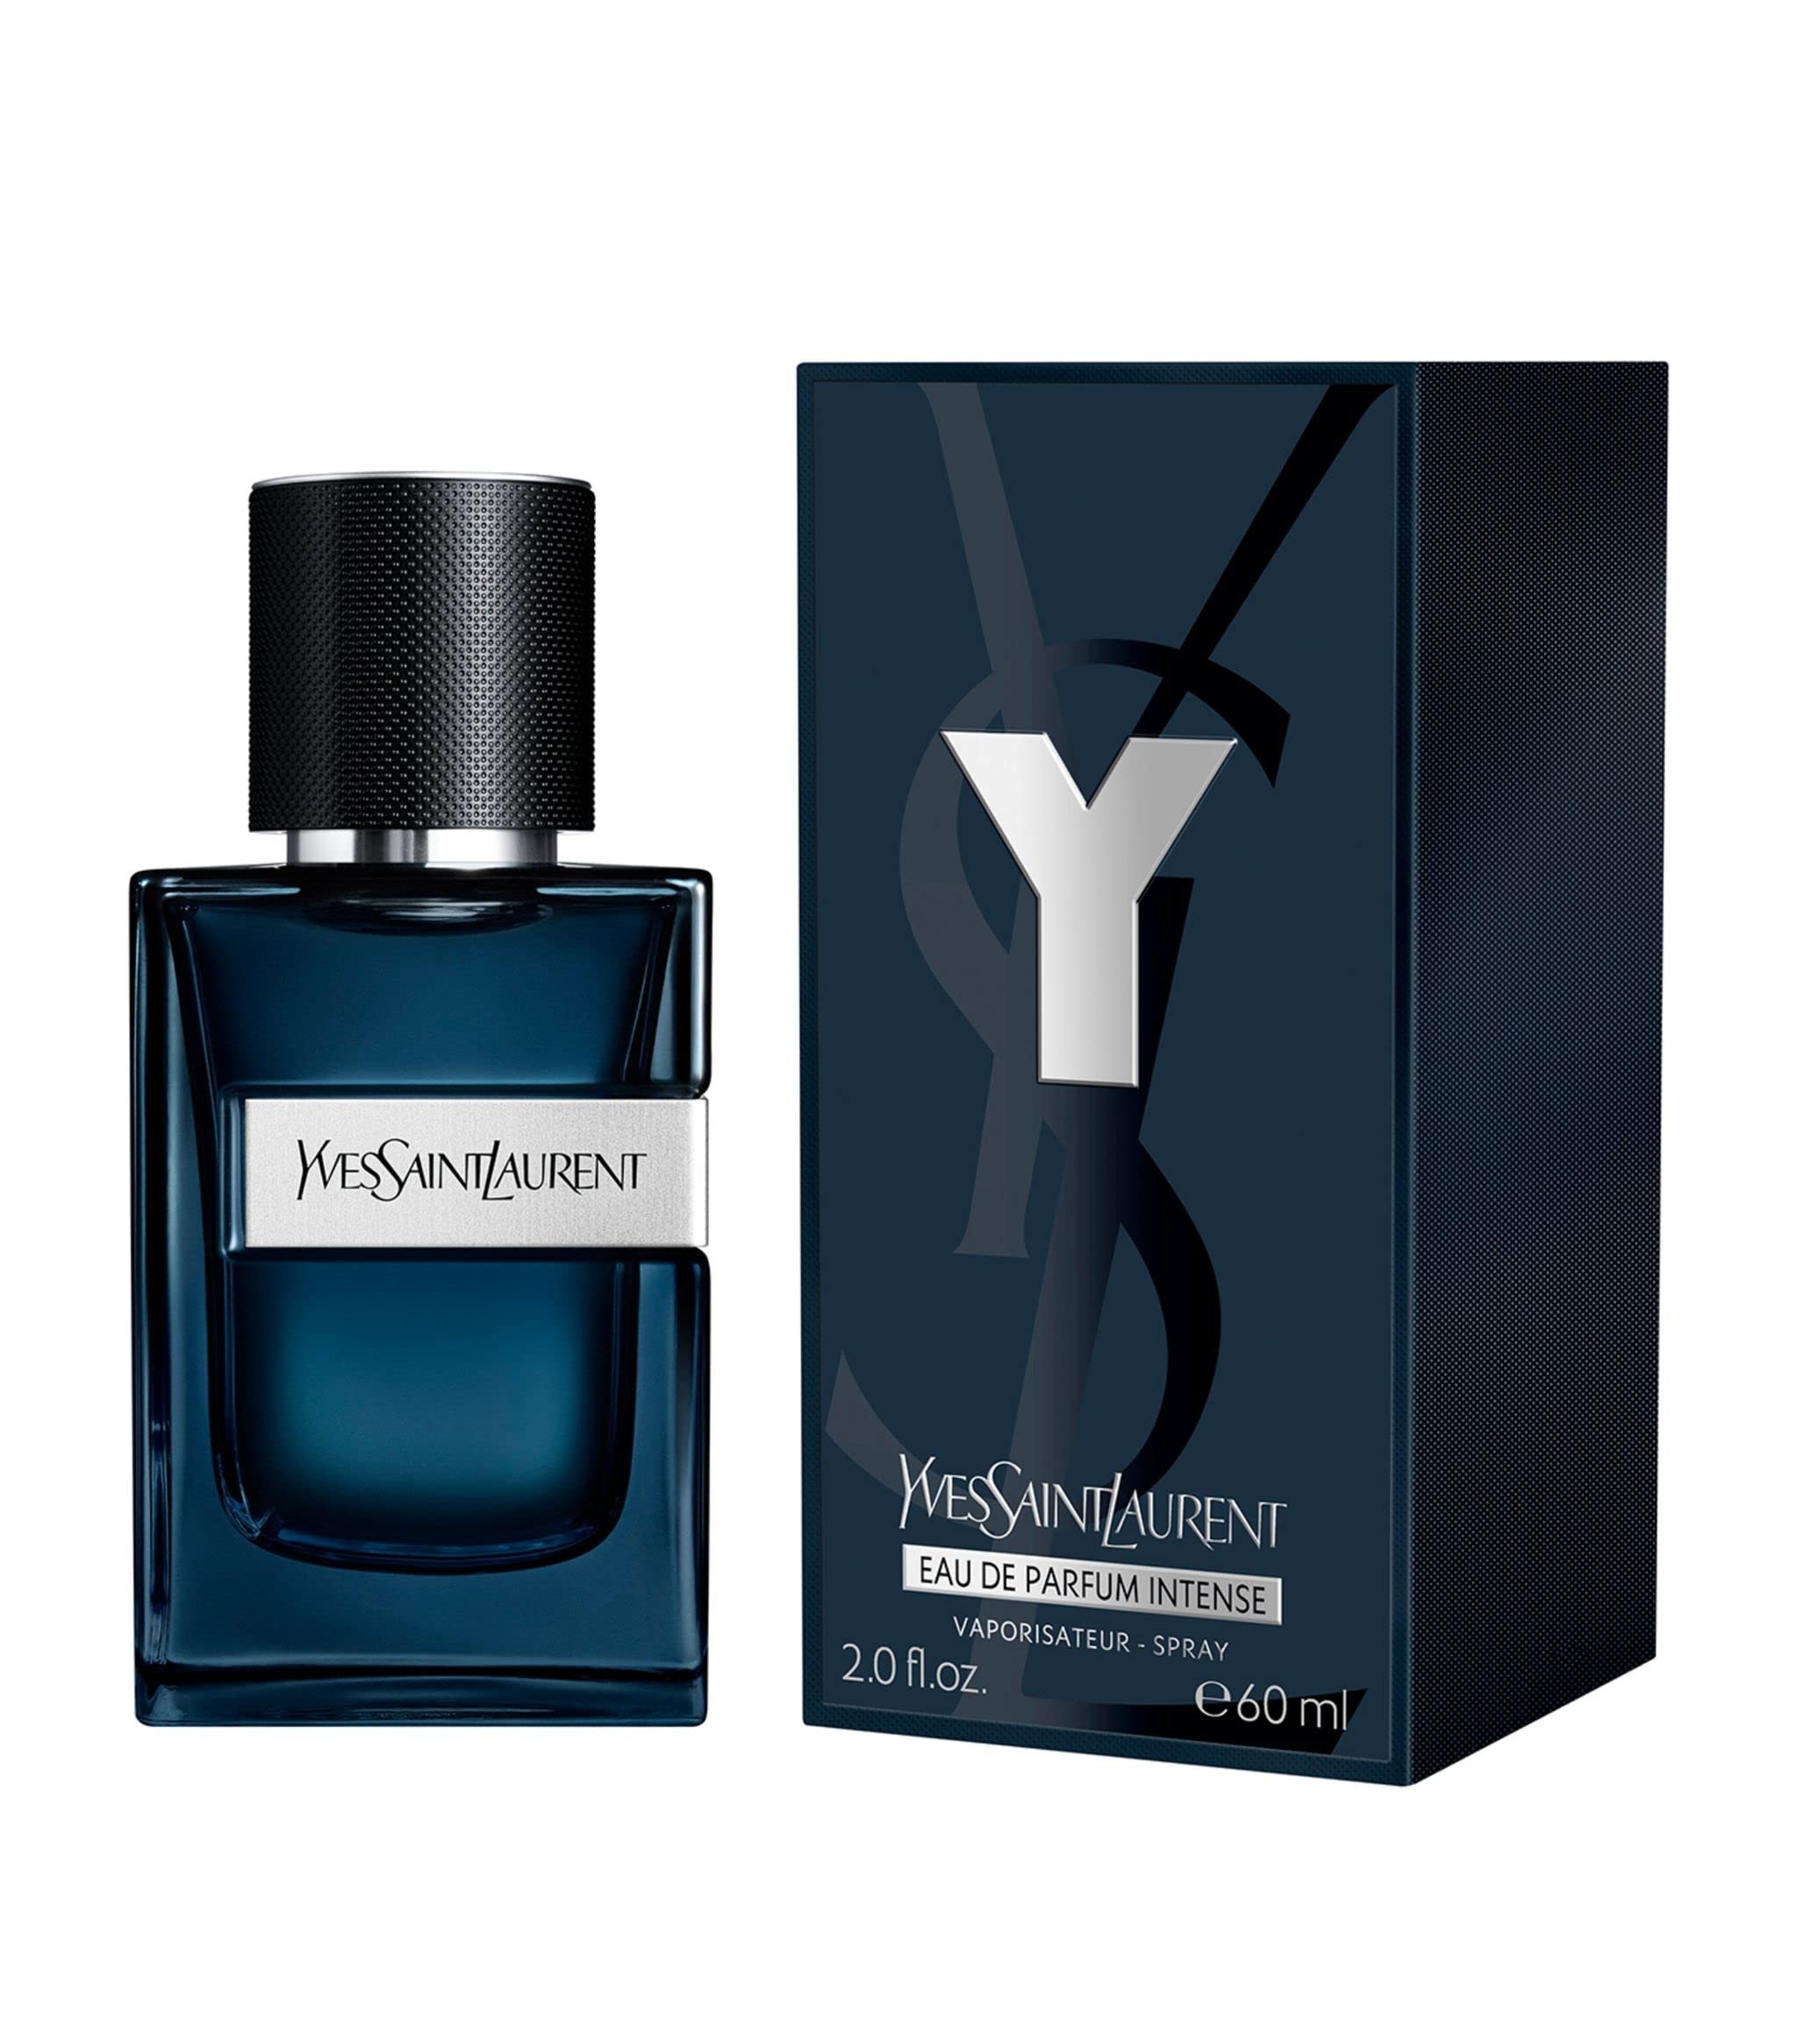 Yves Saint Laurent Y Eau de Parfum Intense 2 oz / 60 mL parfum spray